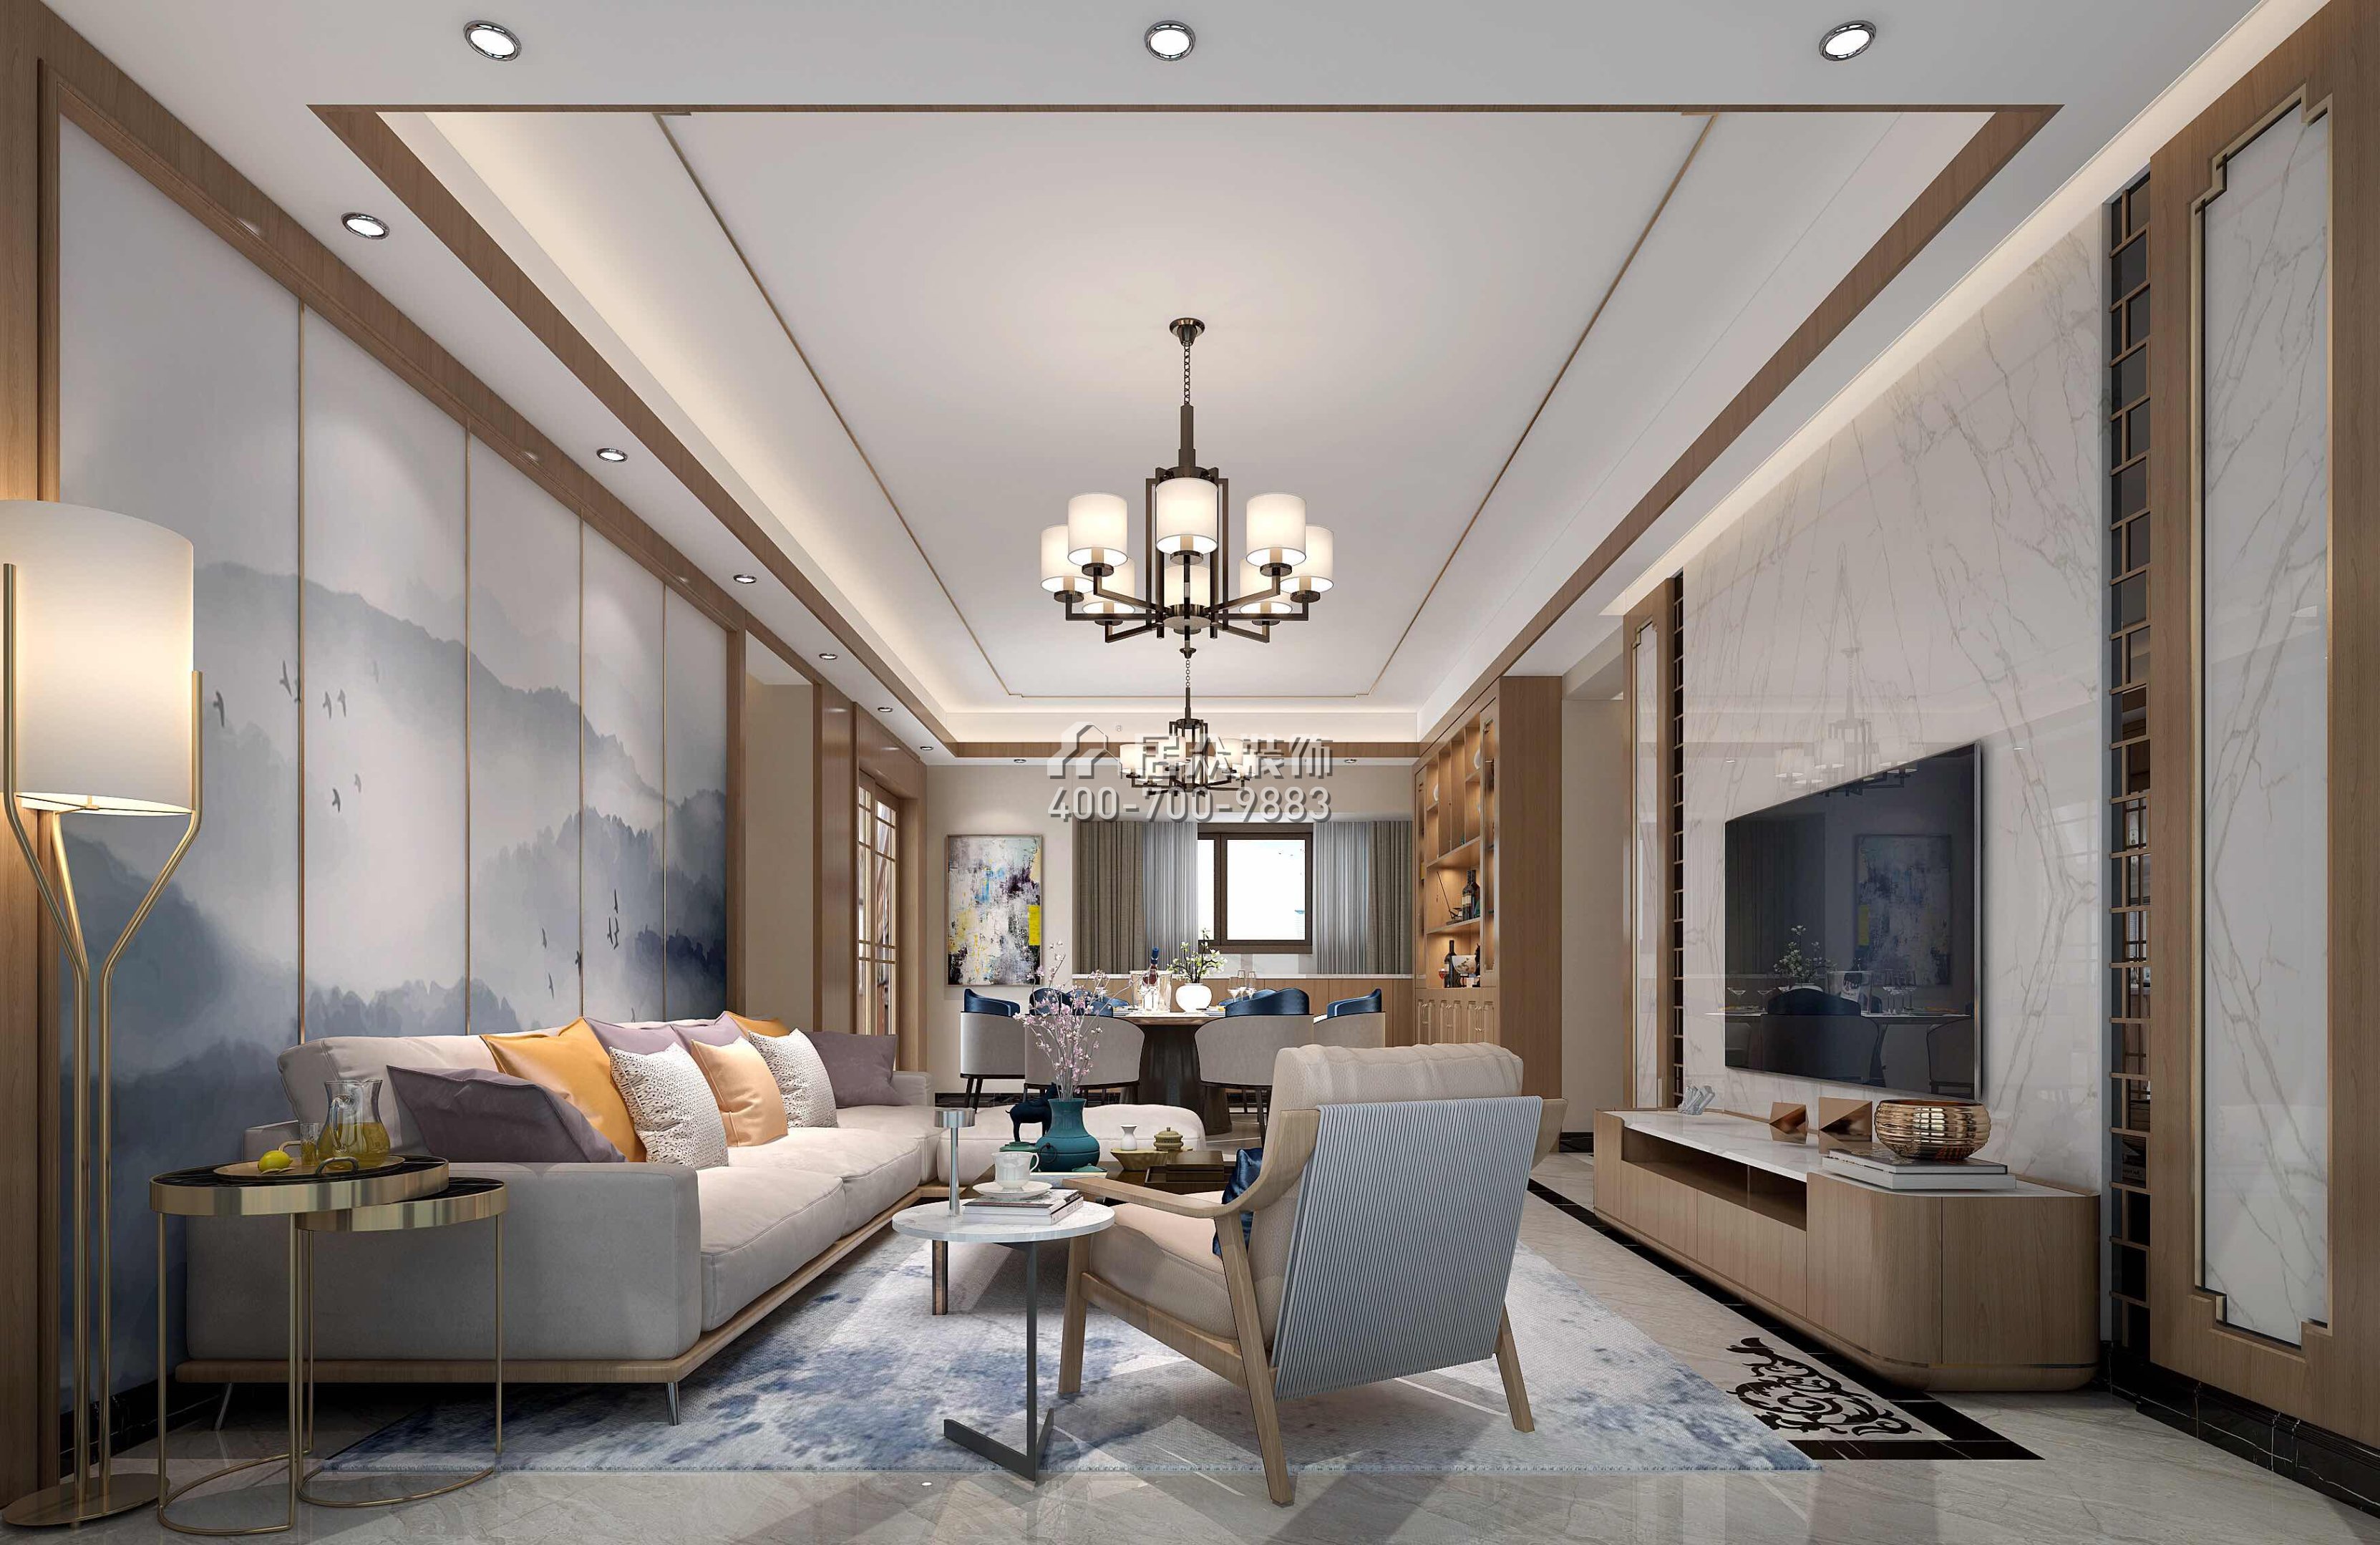 星河丹堤140平方米中式风格平层户型客厅装修效果图